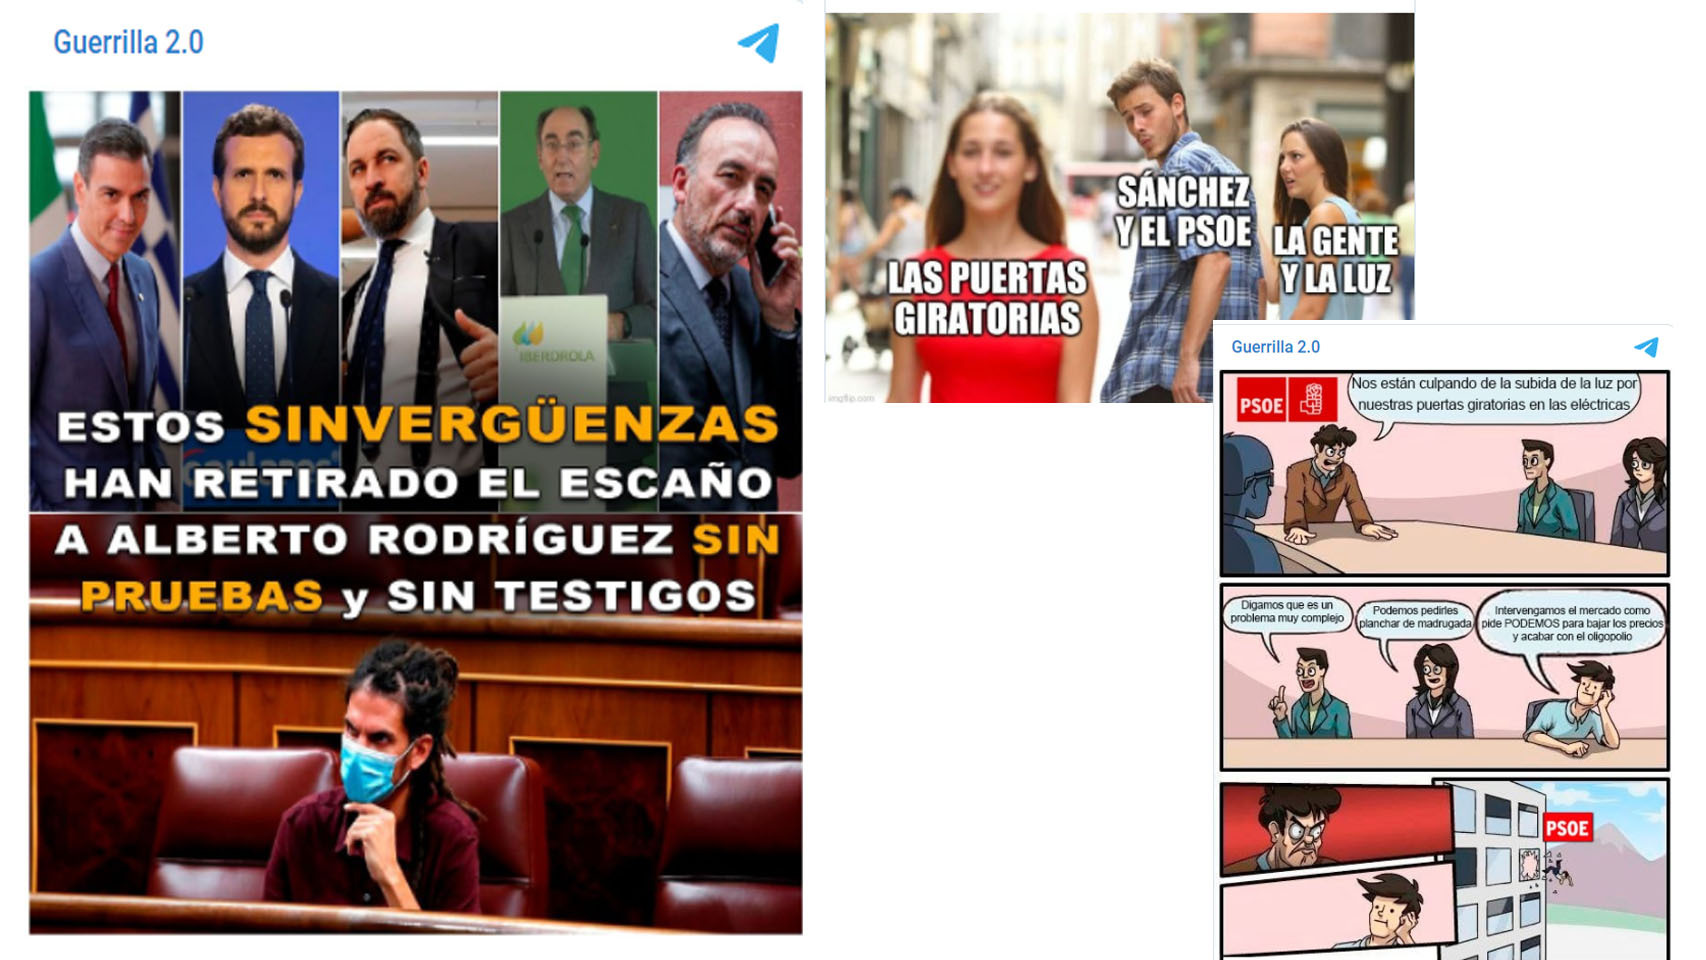 Algunas de las campañas que Podemos promueve contra sus socios de Gobierno a través del canal Guerrilla.